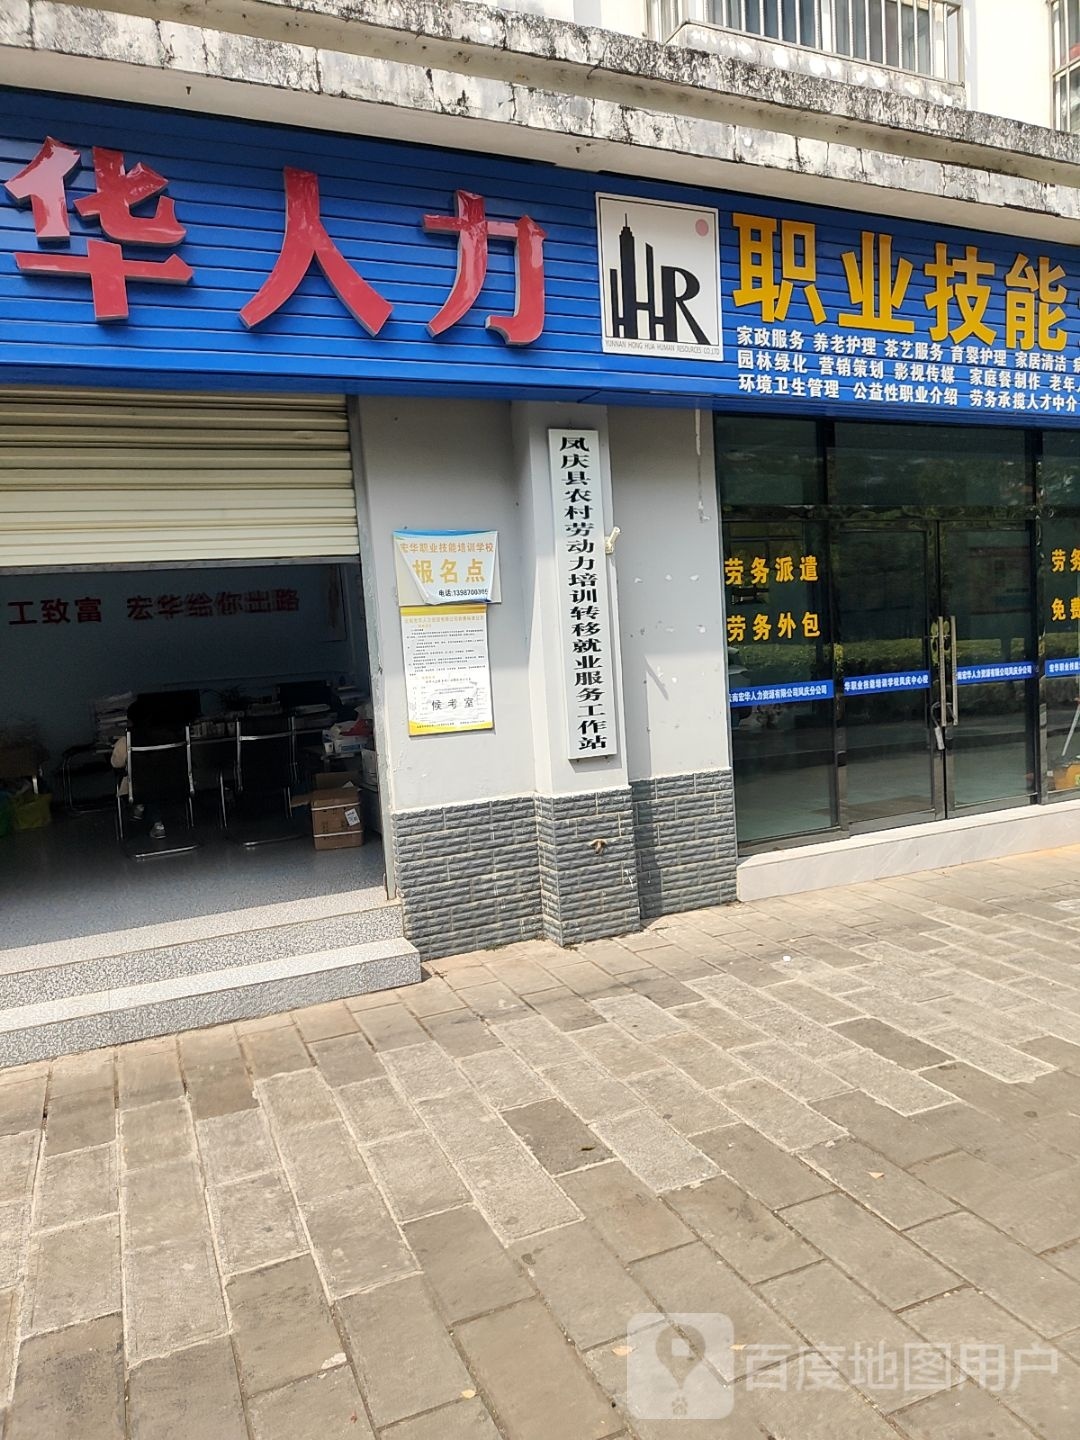 凤庆县农村劳动力培训转移就业服务工作站